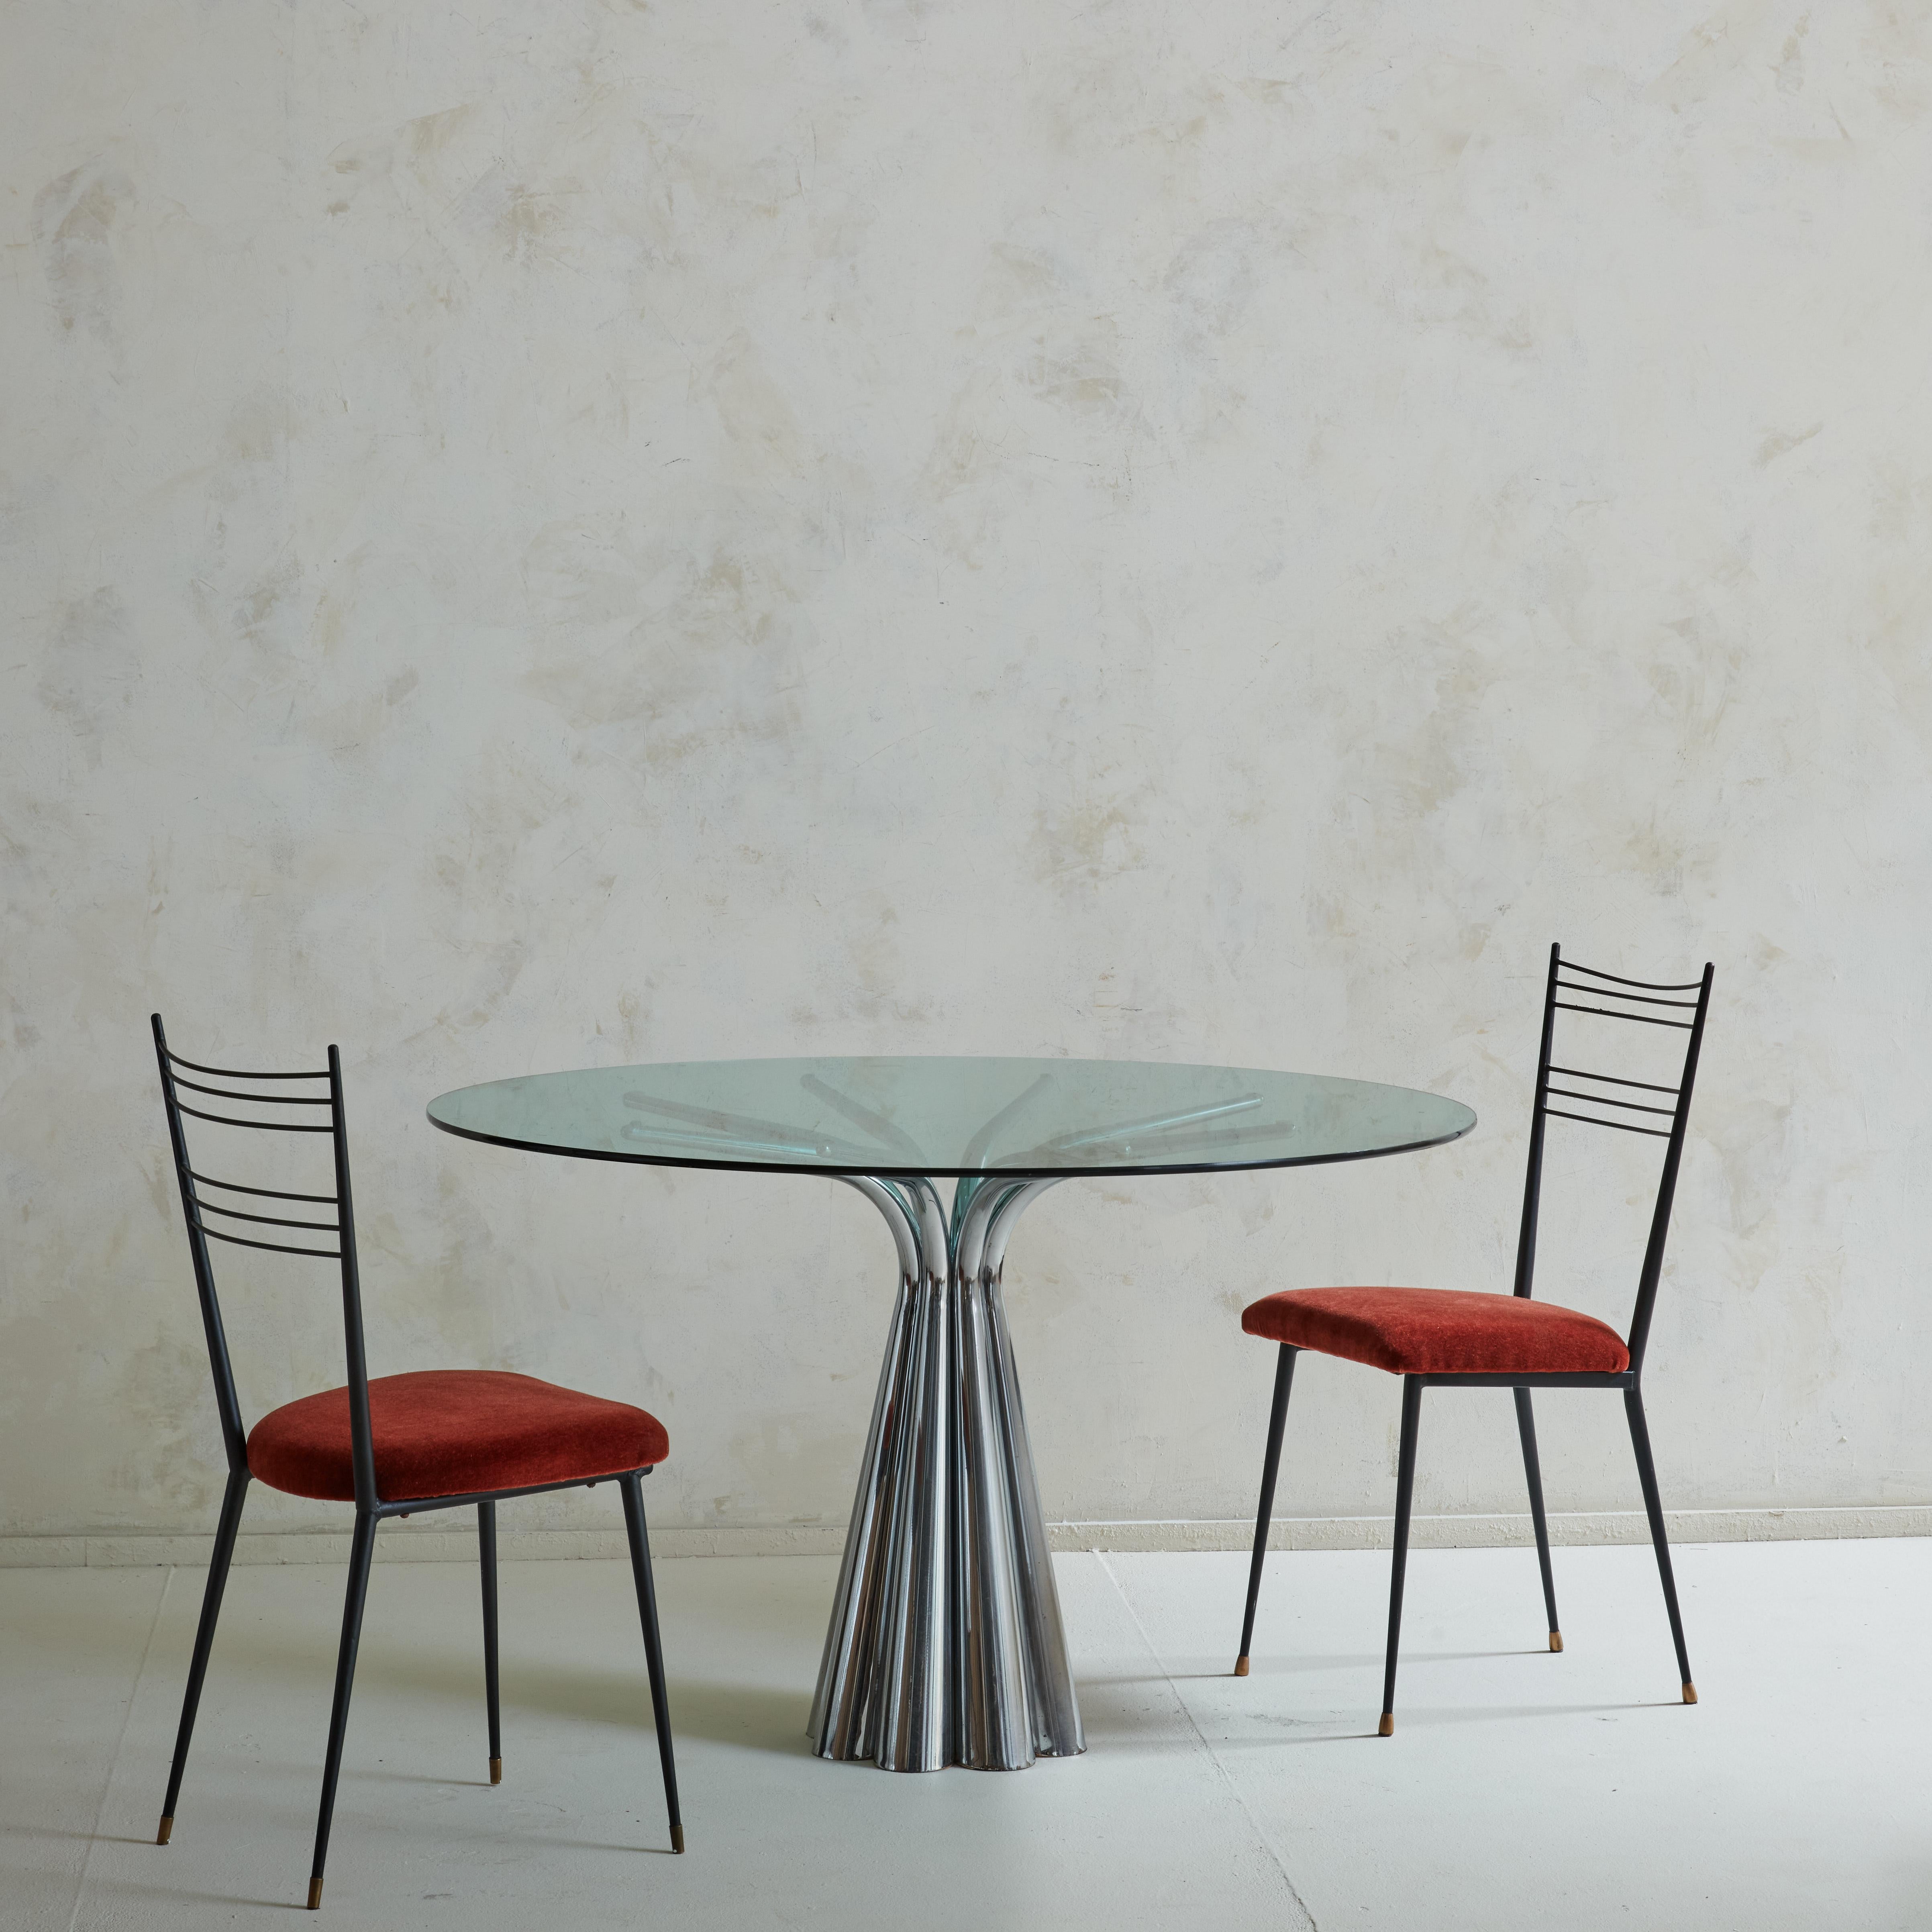 Une incroyable table de salle à manger des années 1970 conçue et fabriquée par la société valencienne Vidal Grau. La base du piédestal est formée de huit cylindres en acier chromé, qui se courbent vers le haut pour soutenir sans heurt le plateau